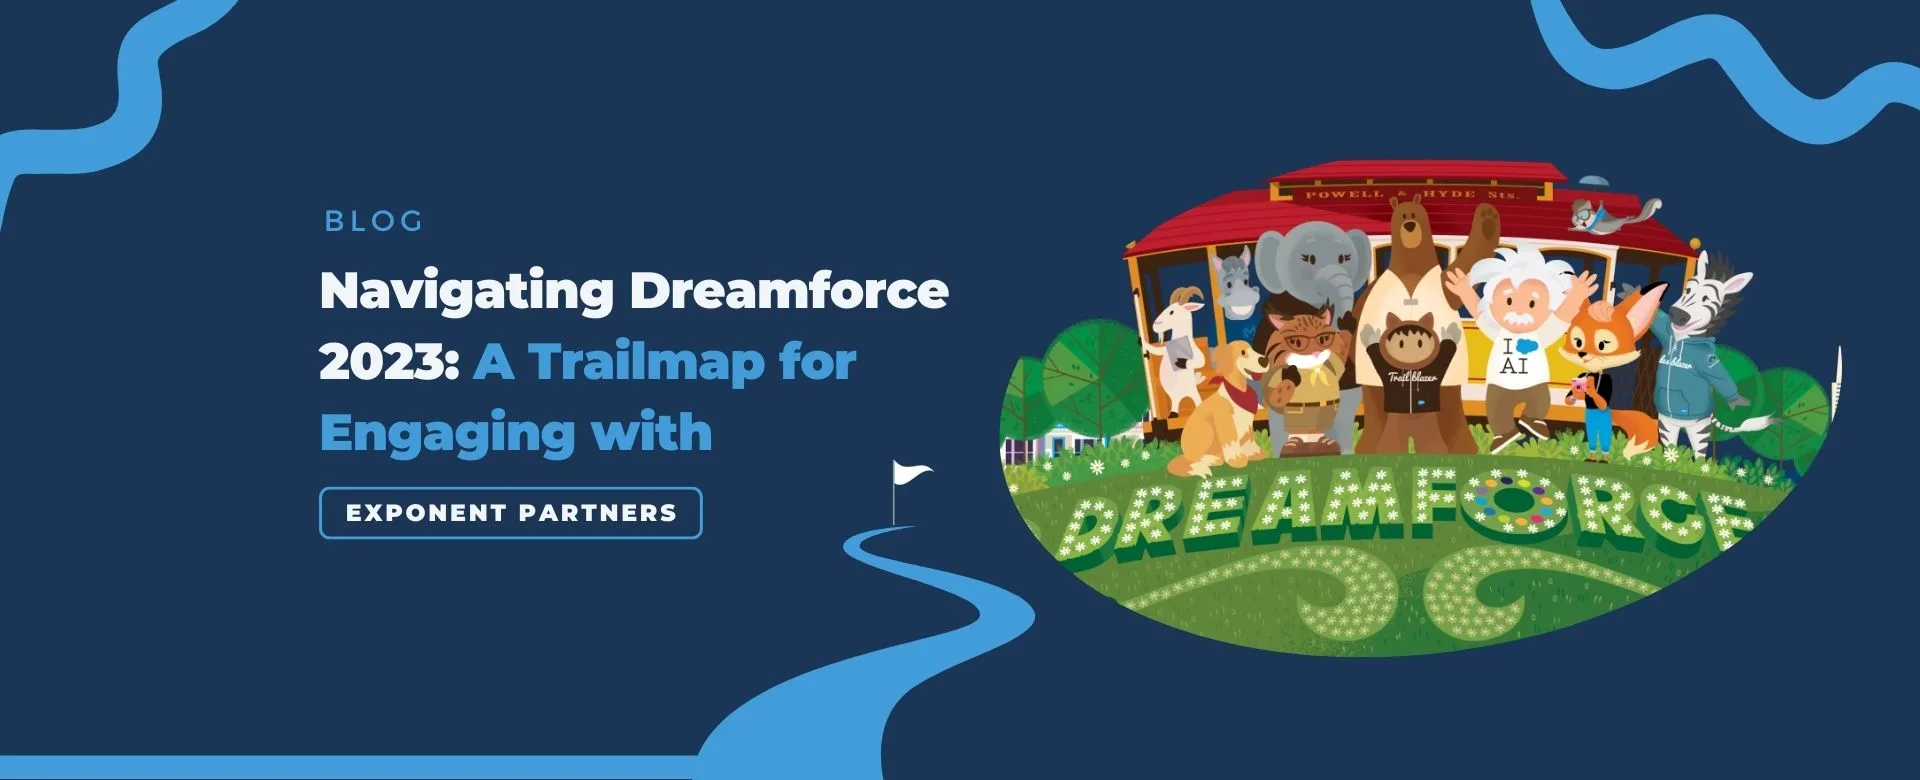 Dreamforce Trailmap